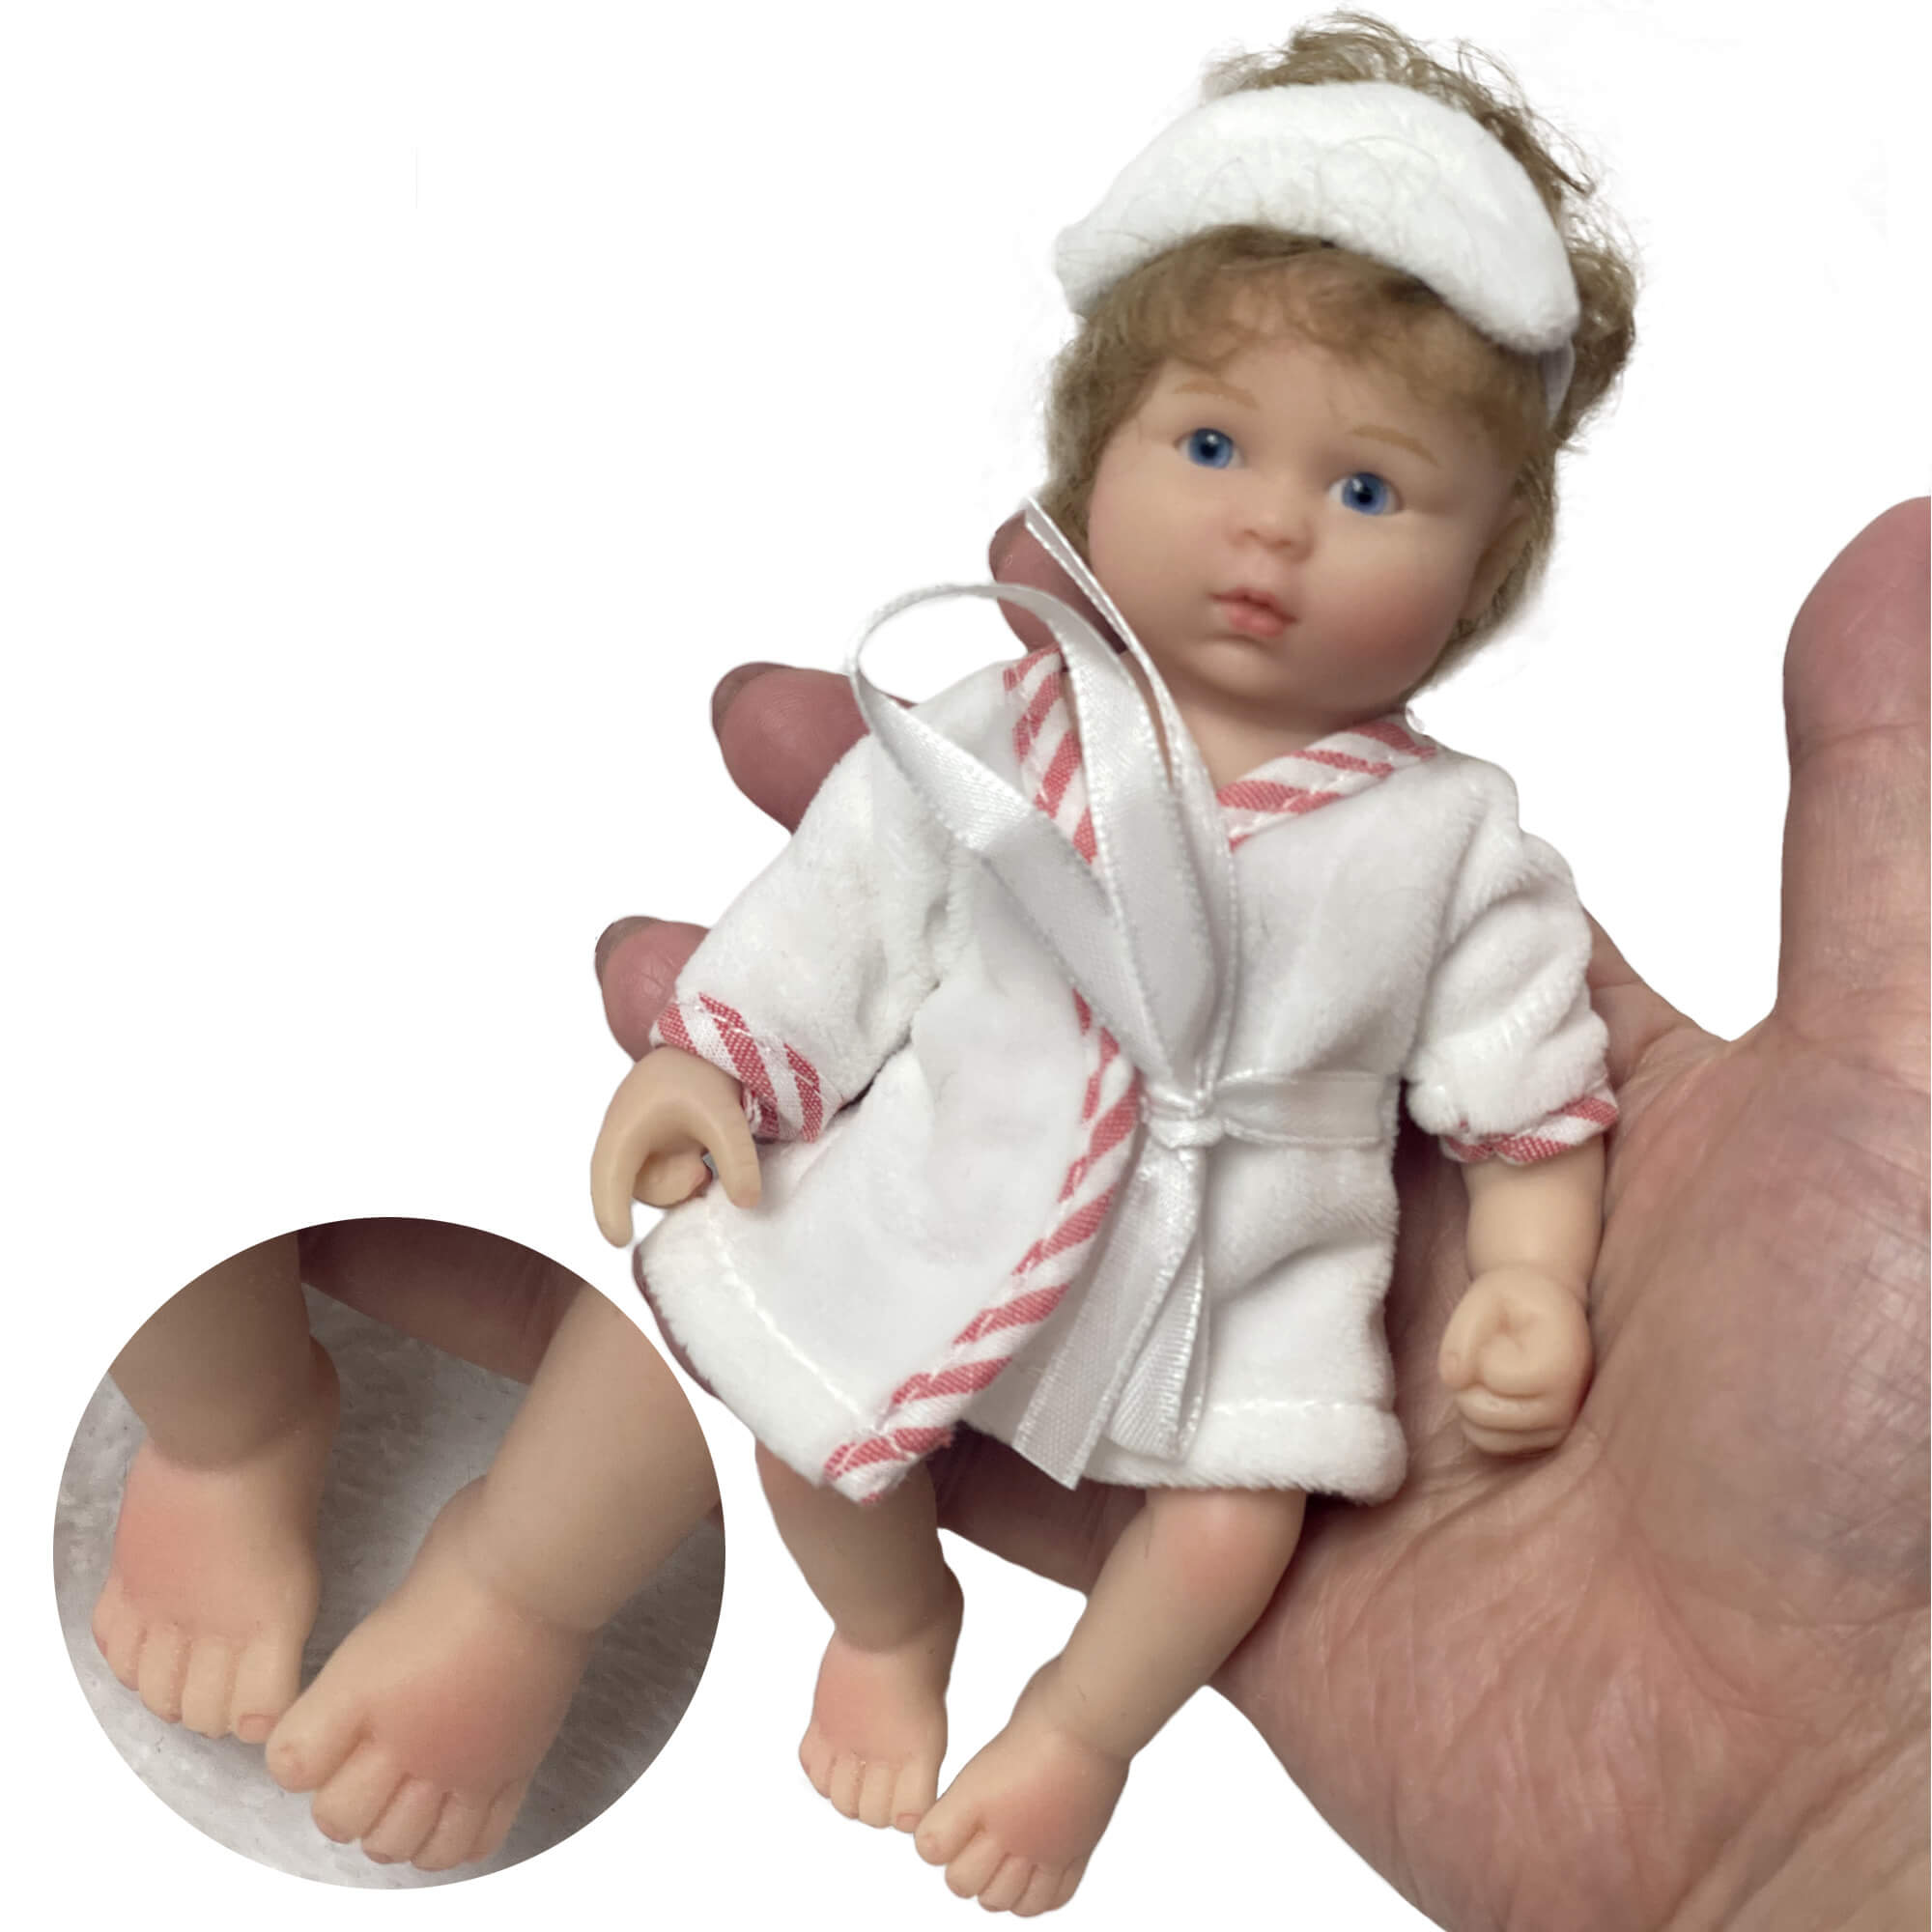 Reborn Baby Dolls, Realistic Soft Silicone Newborn Baby Doll,Real Full Body Silicone Reborn Baby Dolls